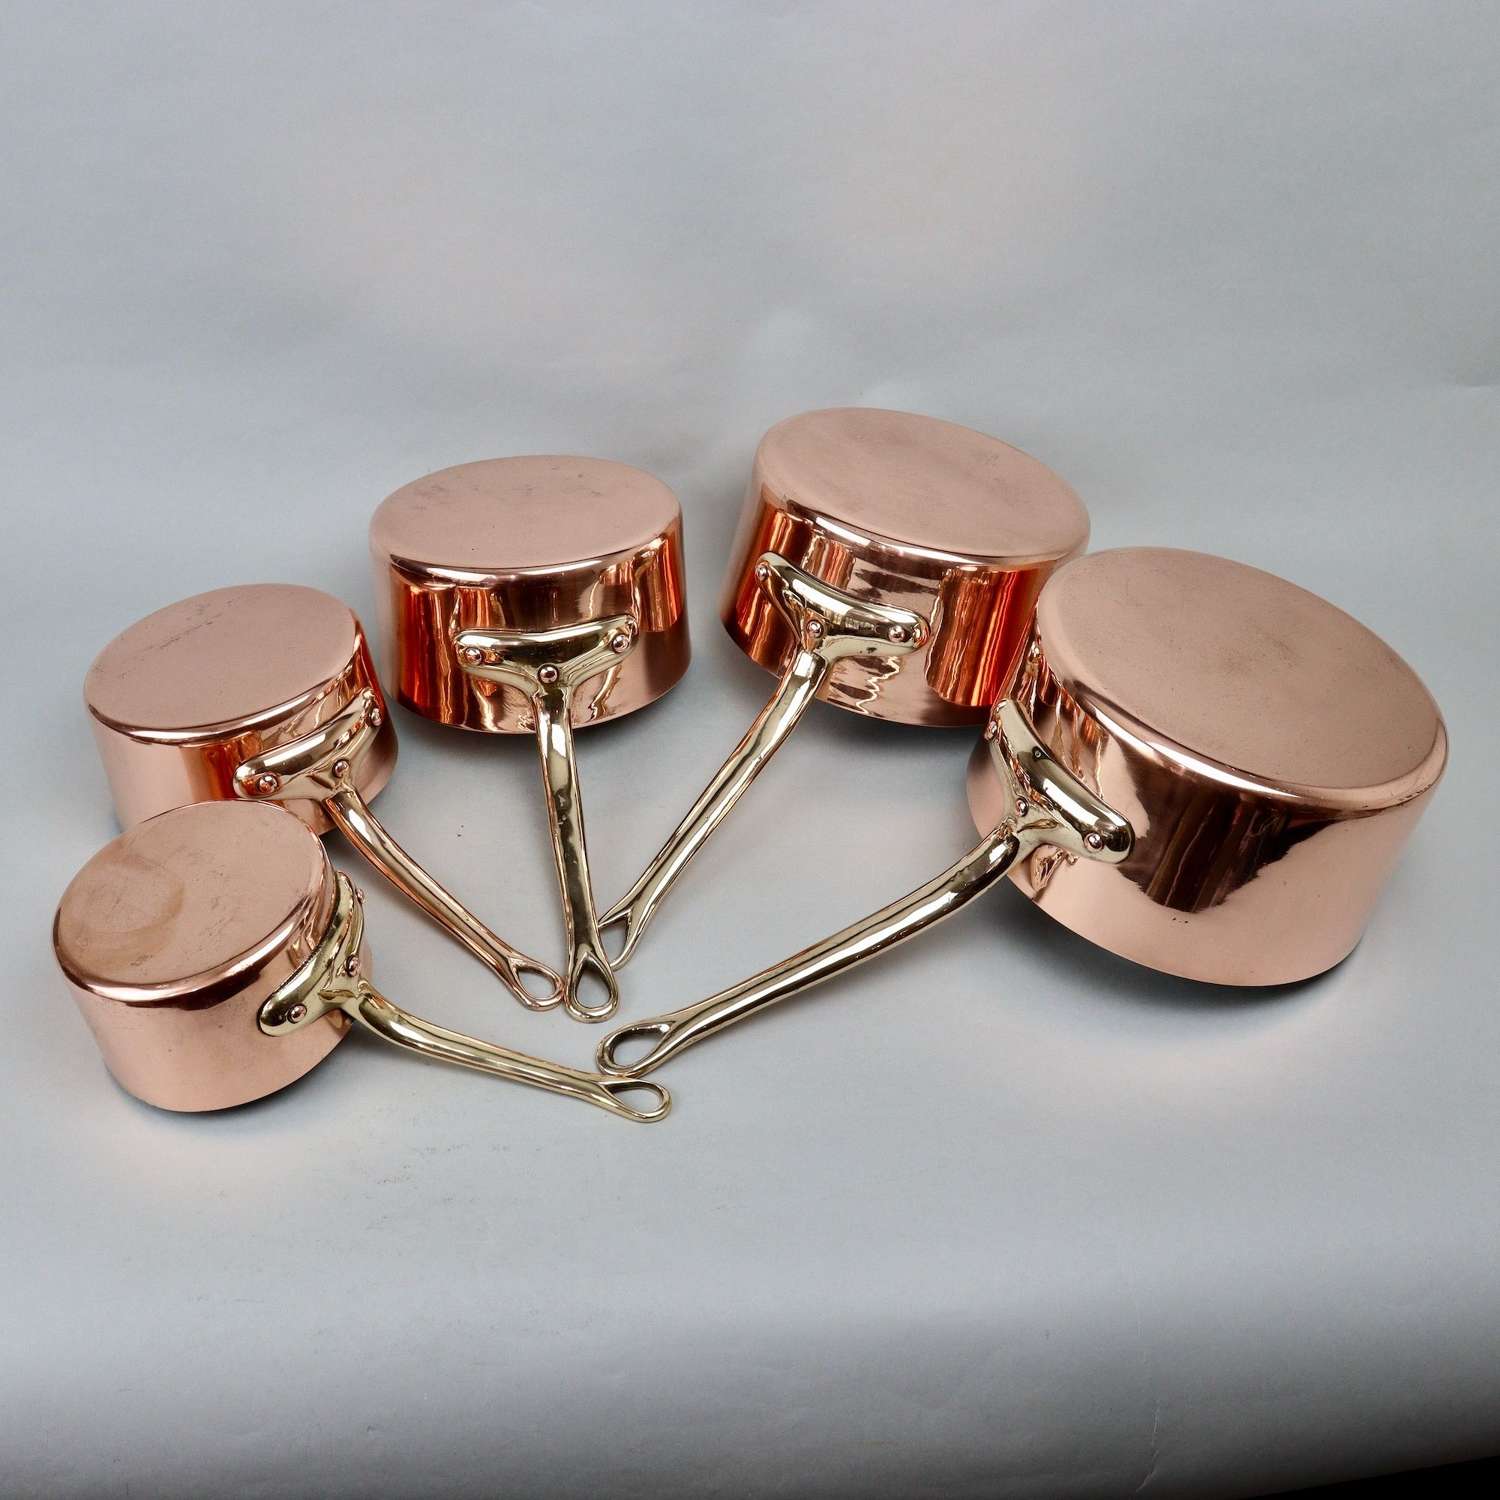 Set of Decorative Copper Saucepans